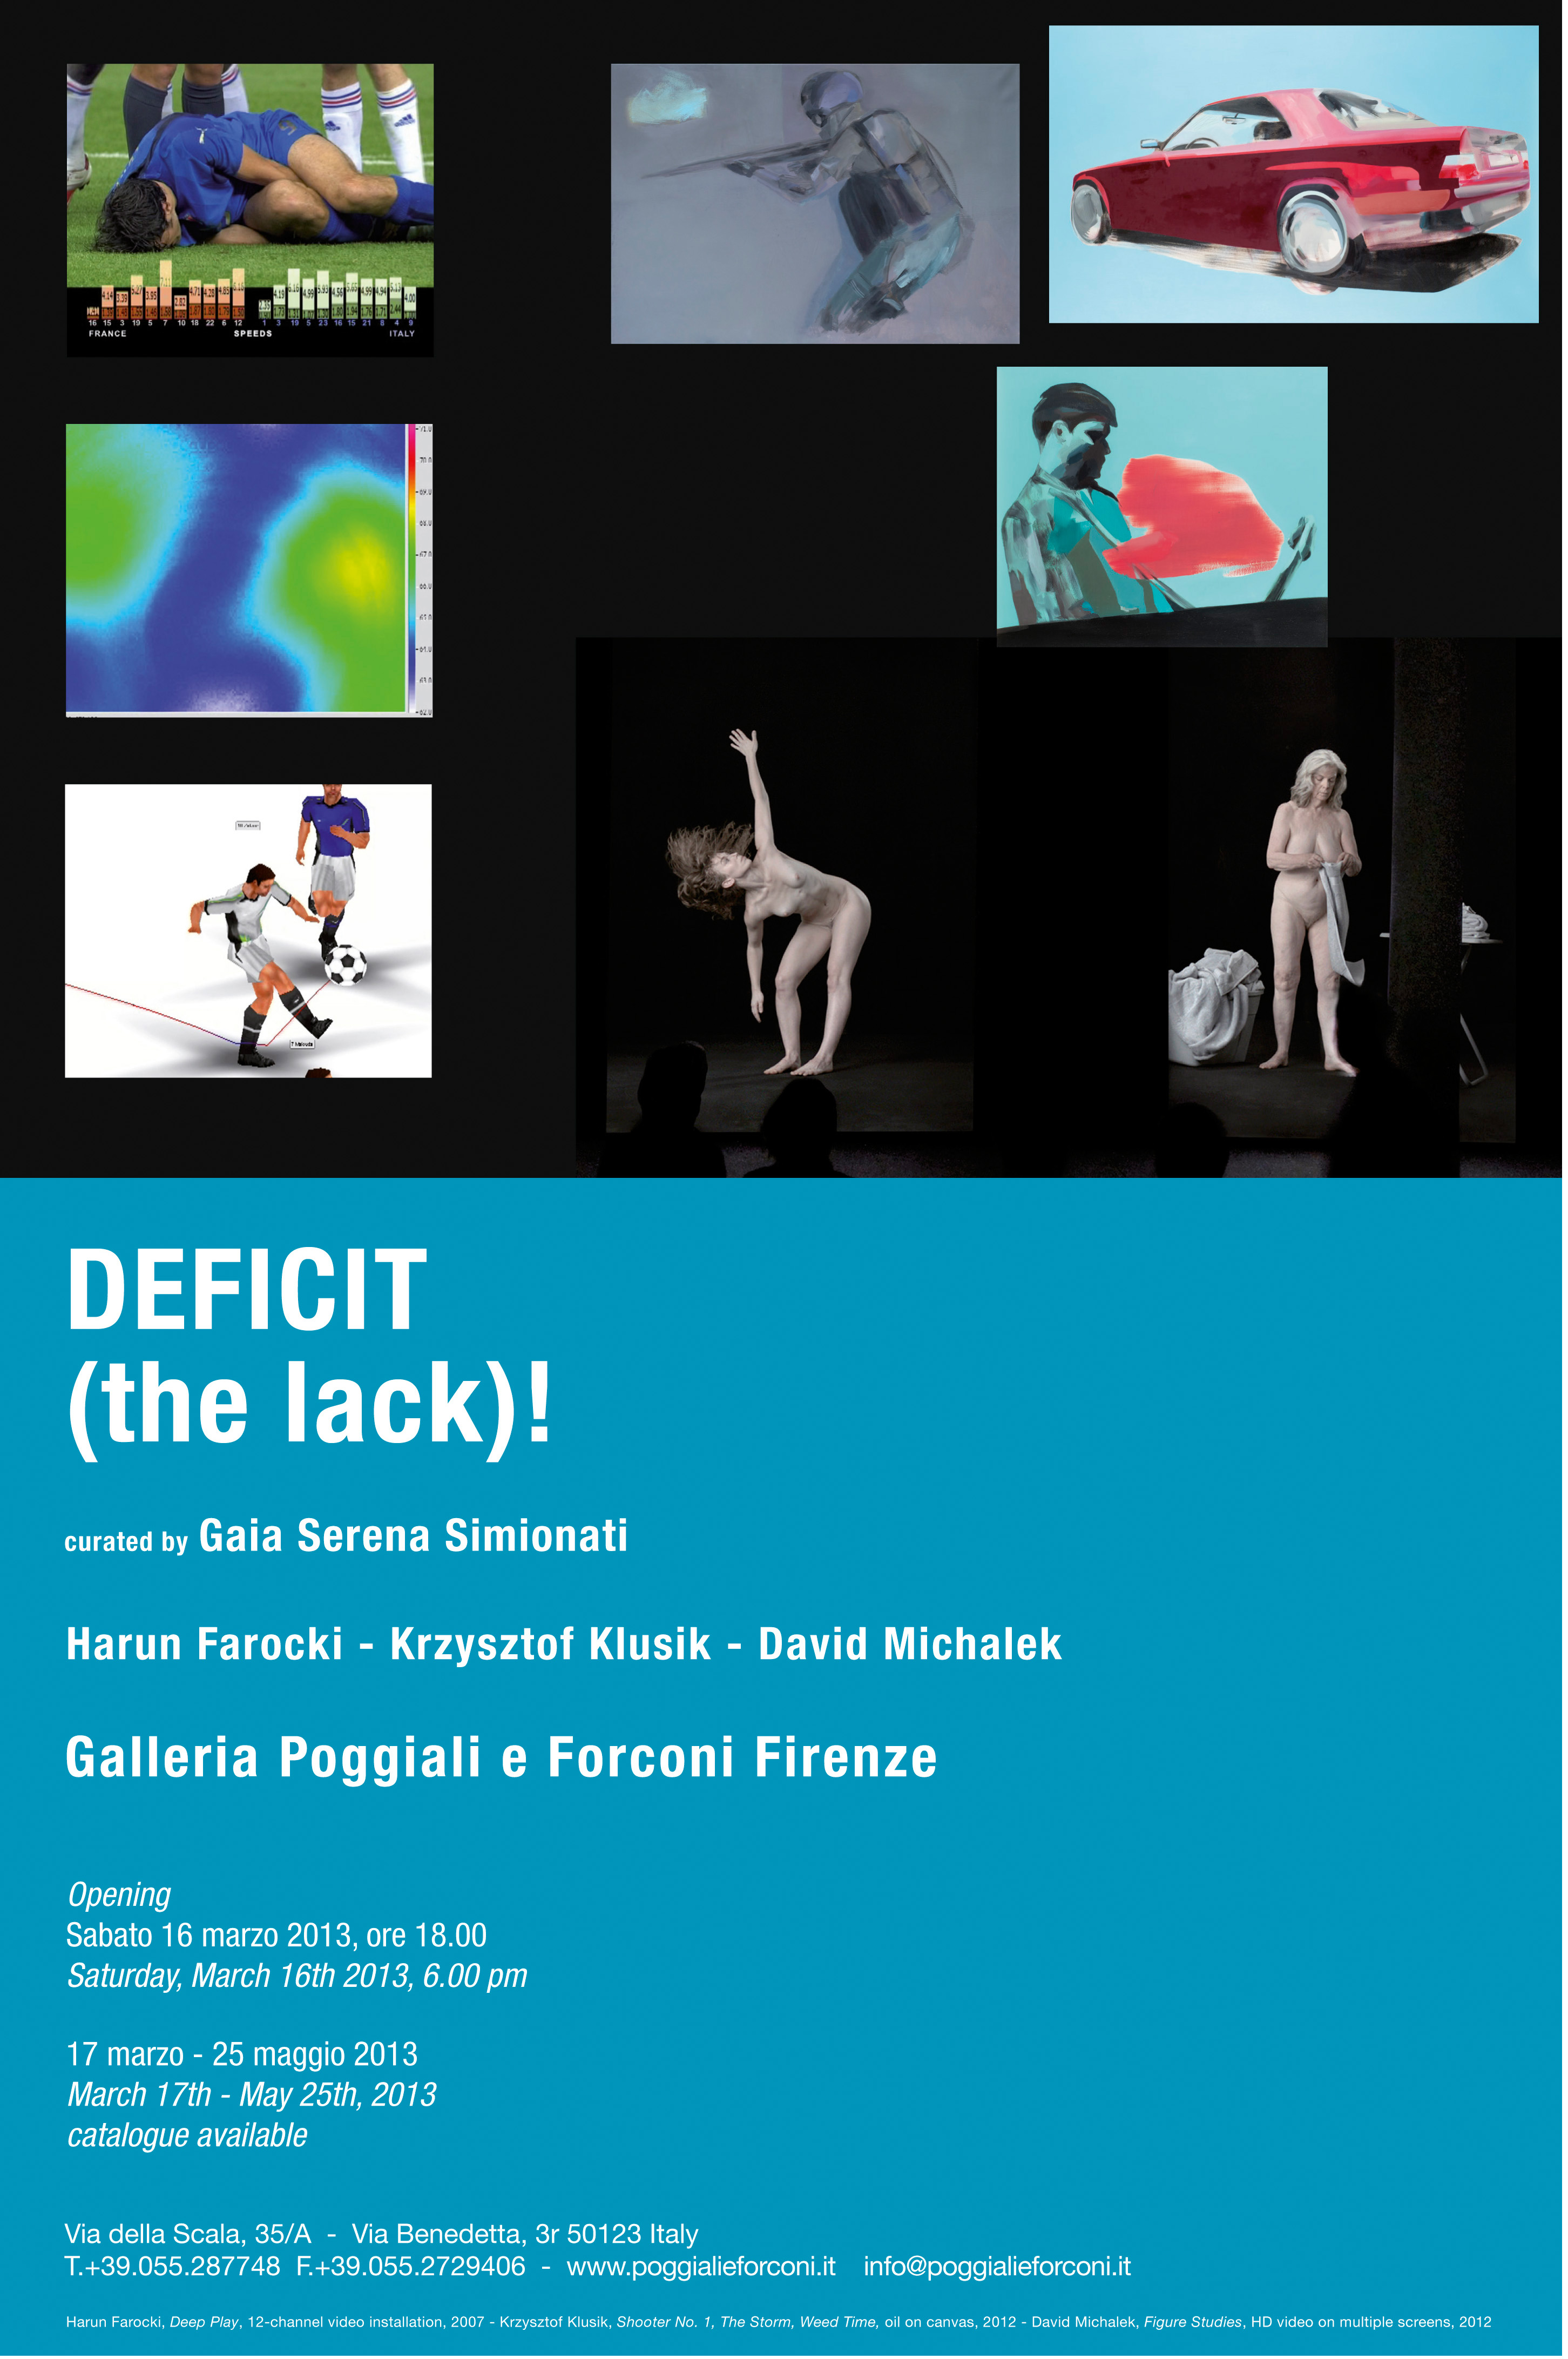 Galleria Poggiali e Forconi presenta “DEFICIT / THE LACK”